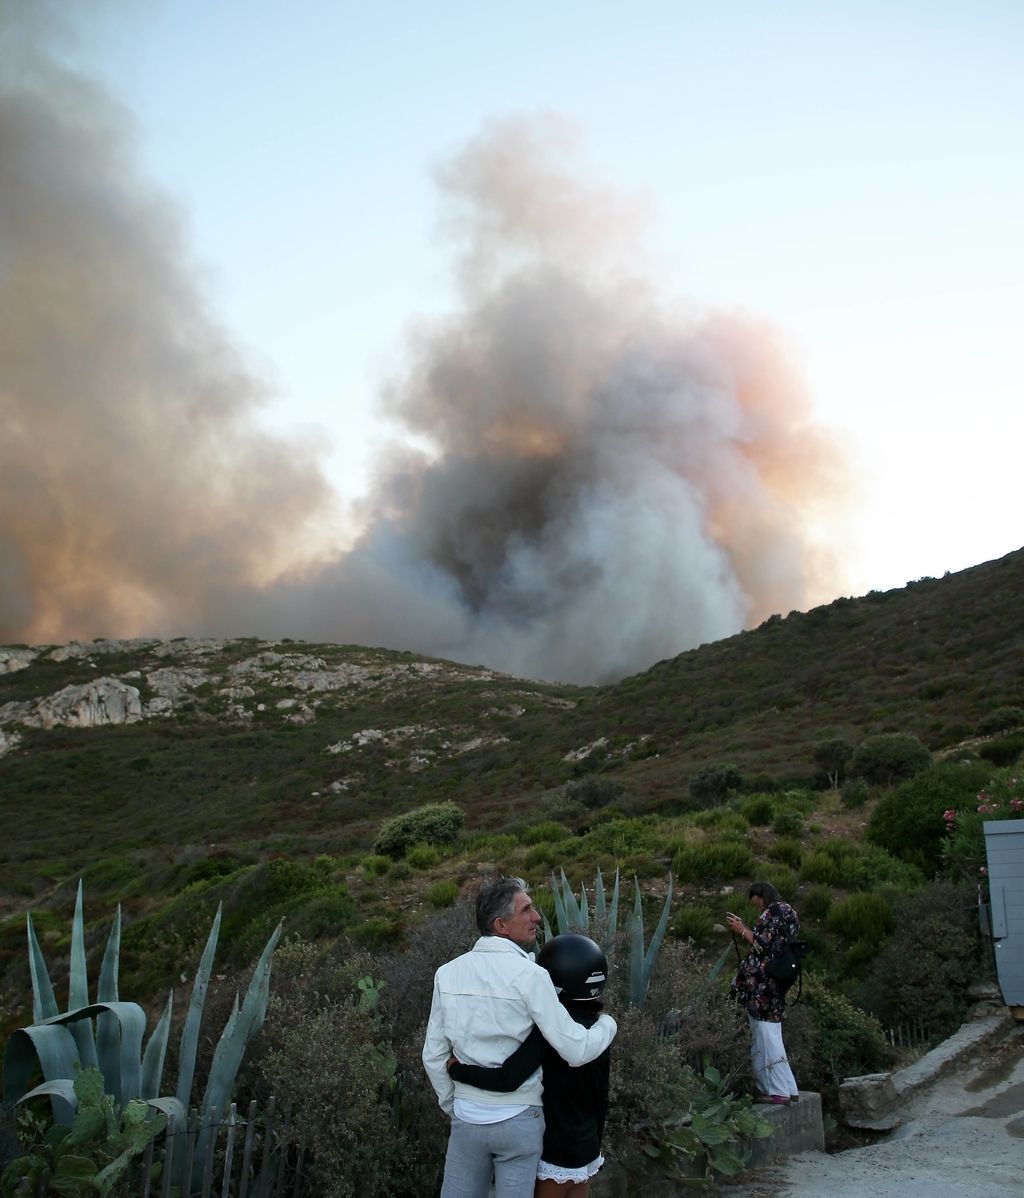 Saint-Tropez se quema: incendio descontrolado en la exclusiva localidad de veraneo francesa